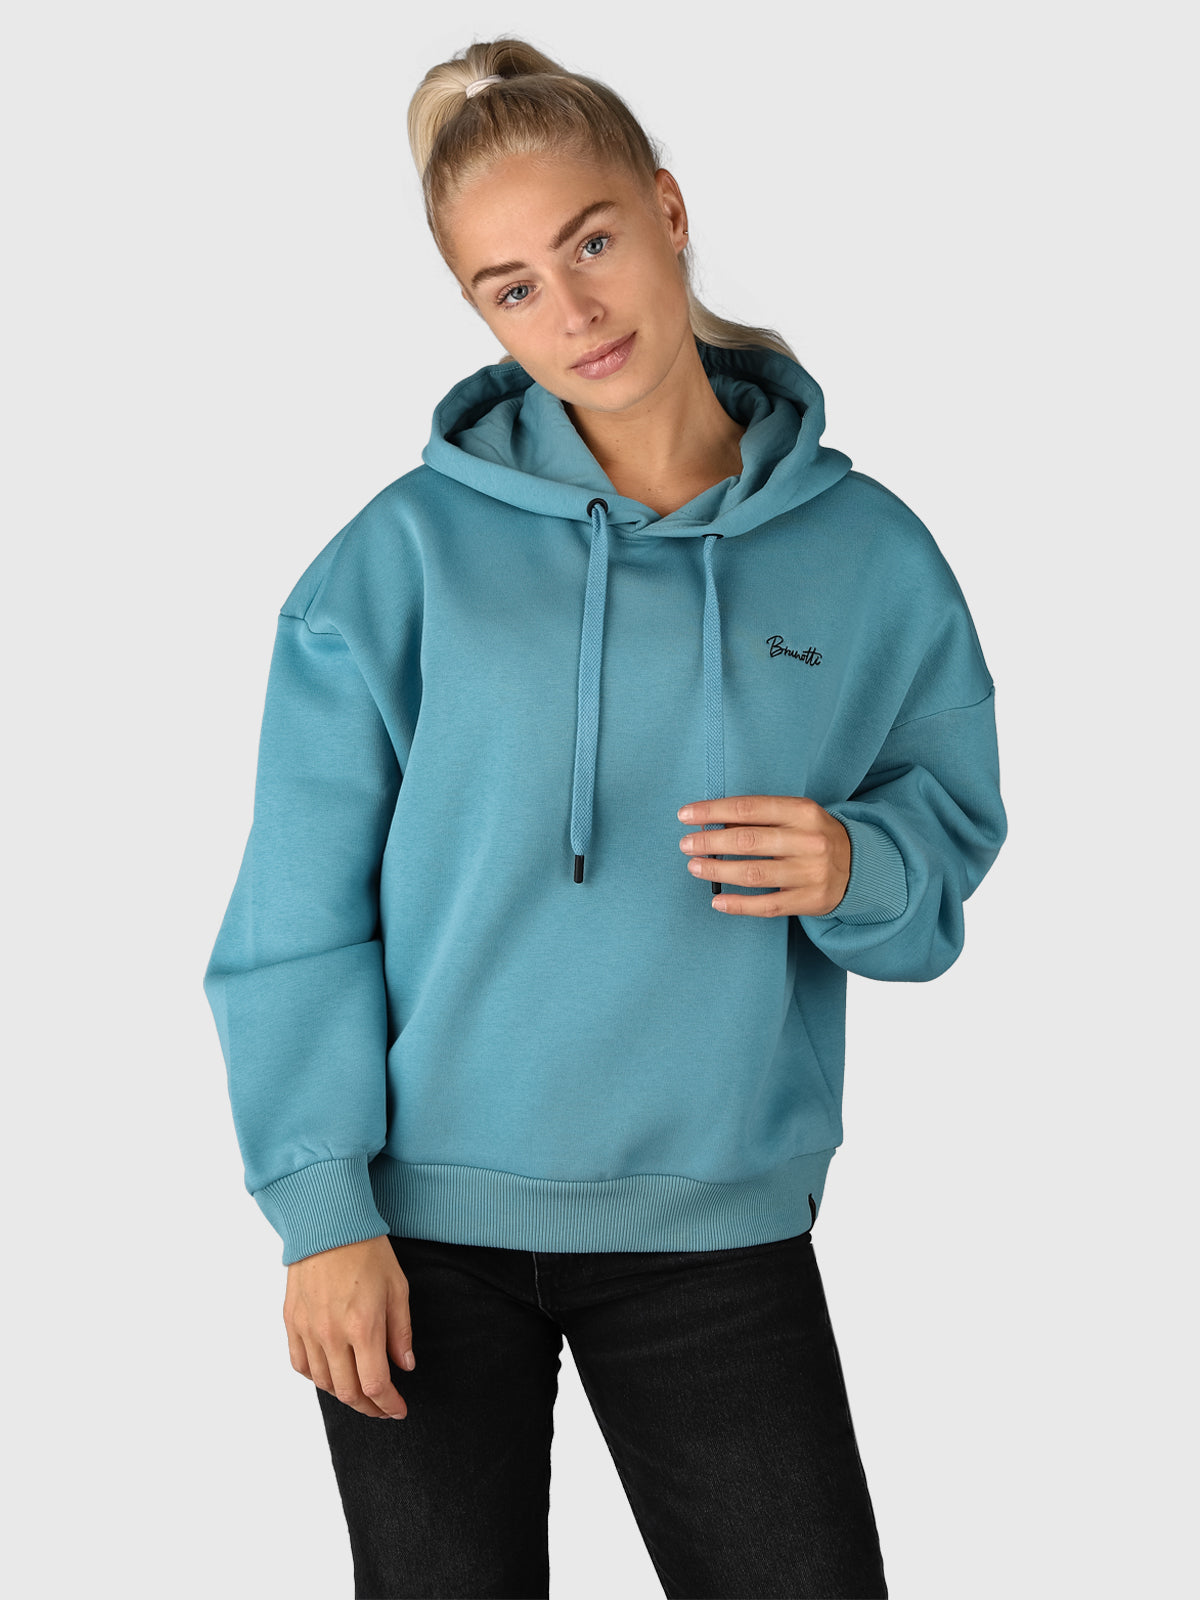 Daphne-R Damen Sweatshirt | Blau